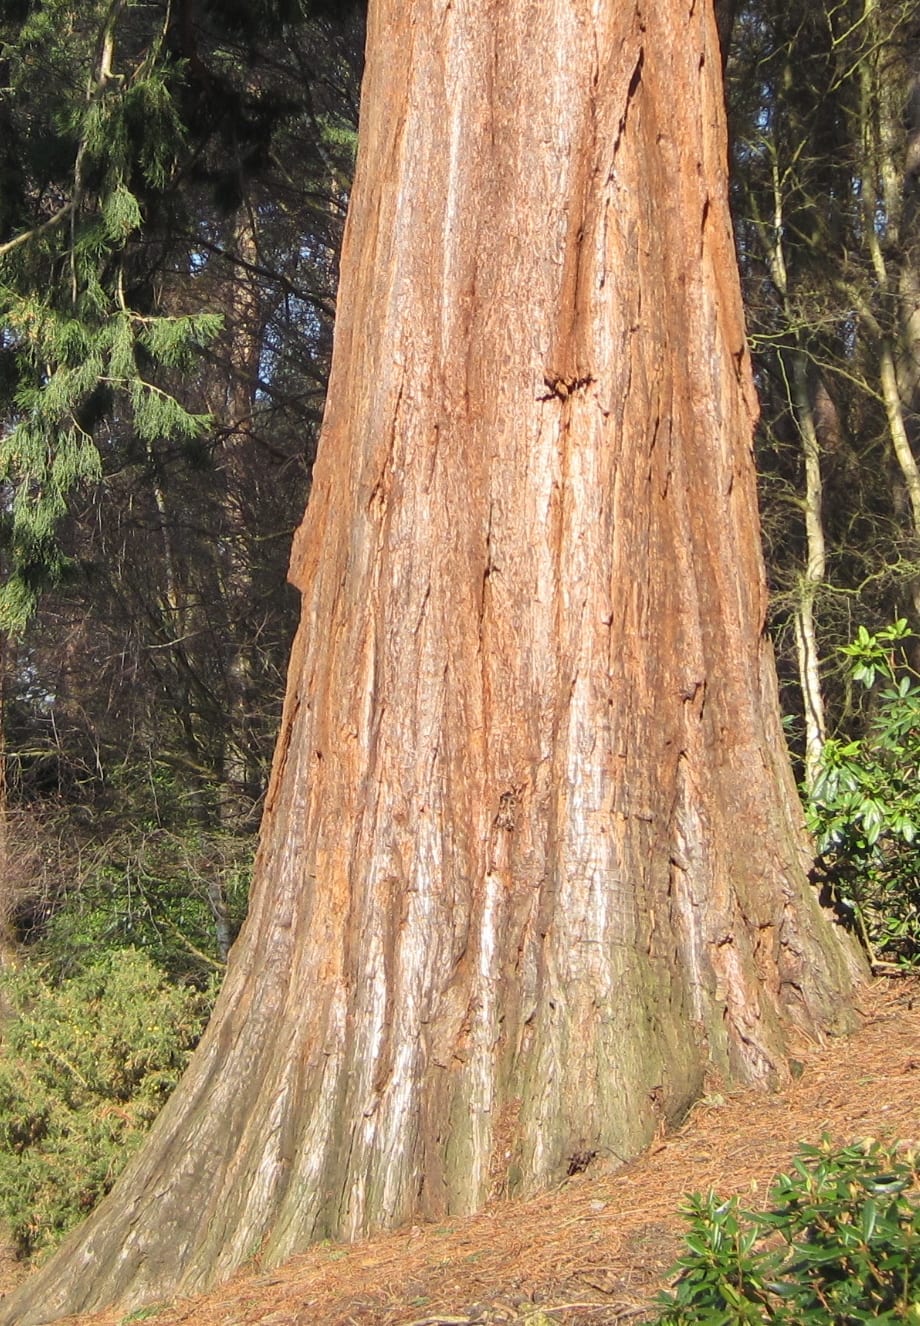 Giant Sequoia bark